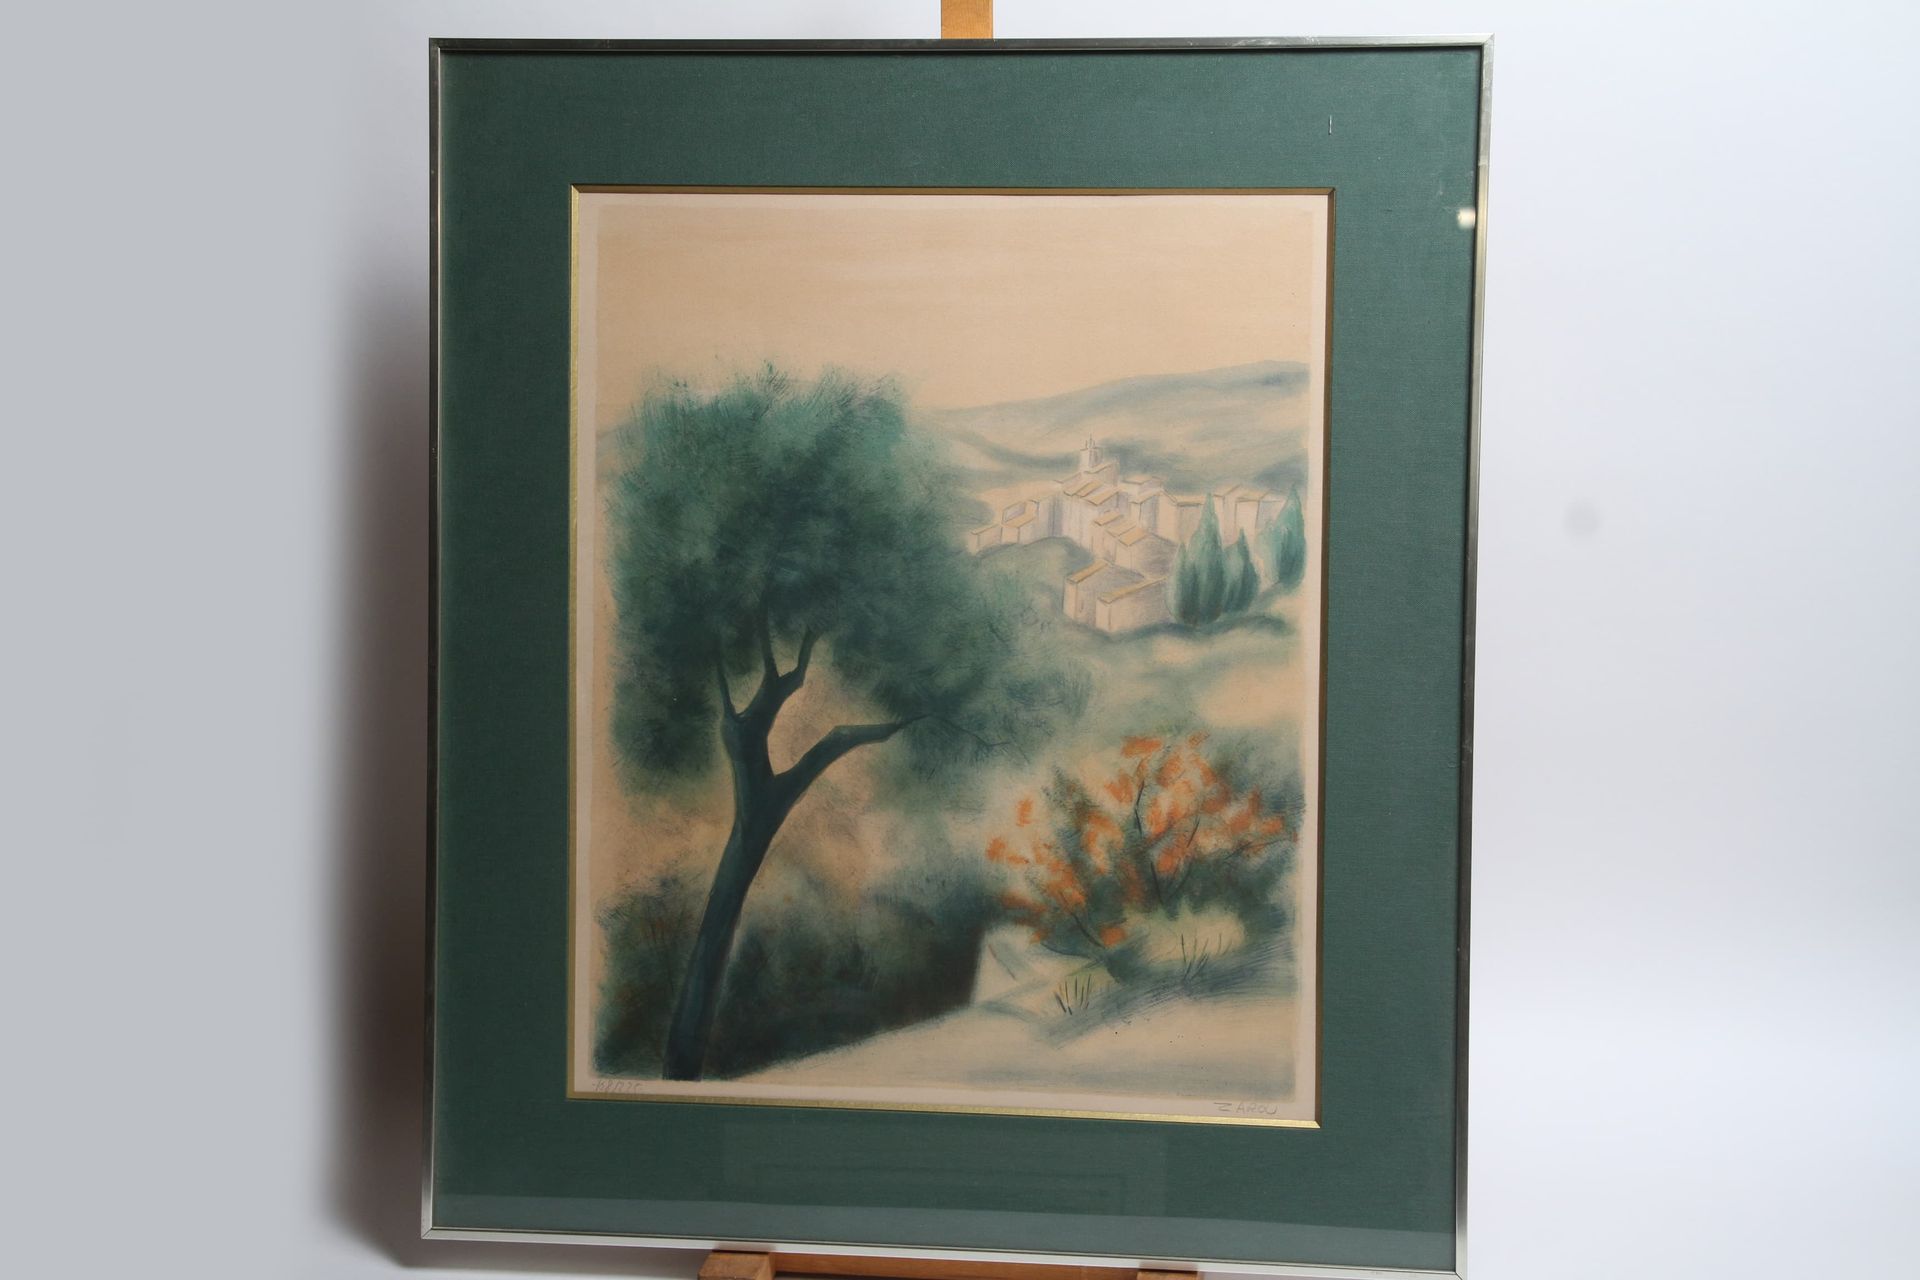 Null 扎鲁（1930-2013） 石墨画 N°168/225 "山丘上的村庄风景" 48 x 58 cm A VUE